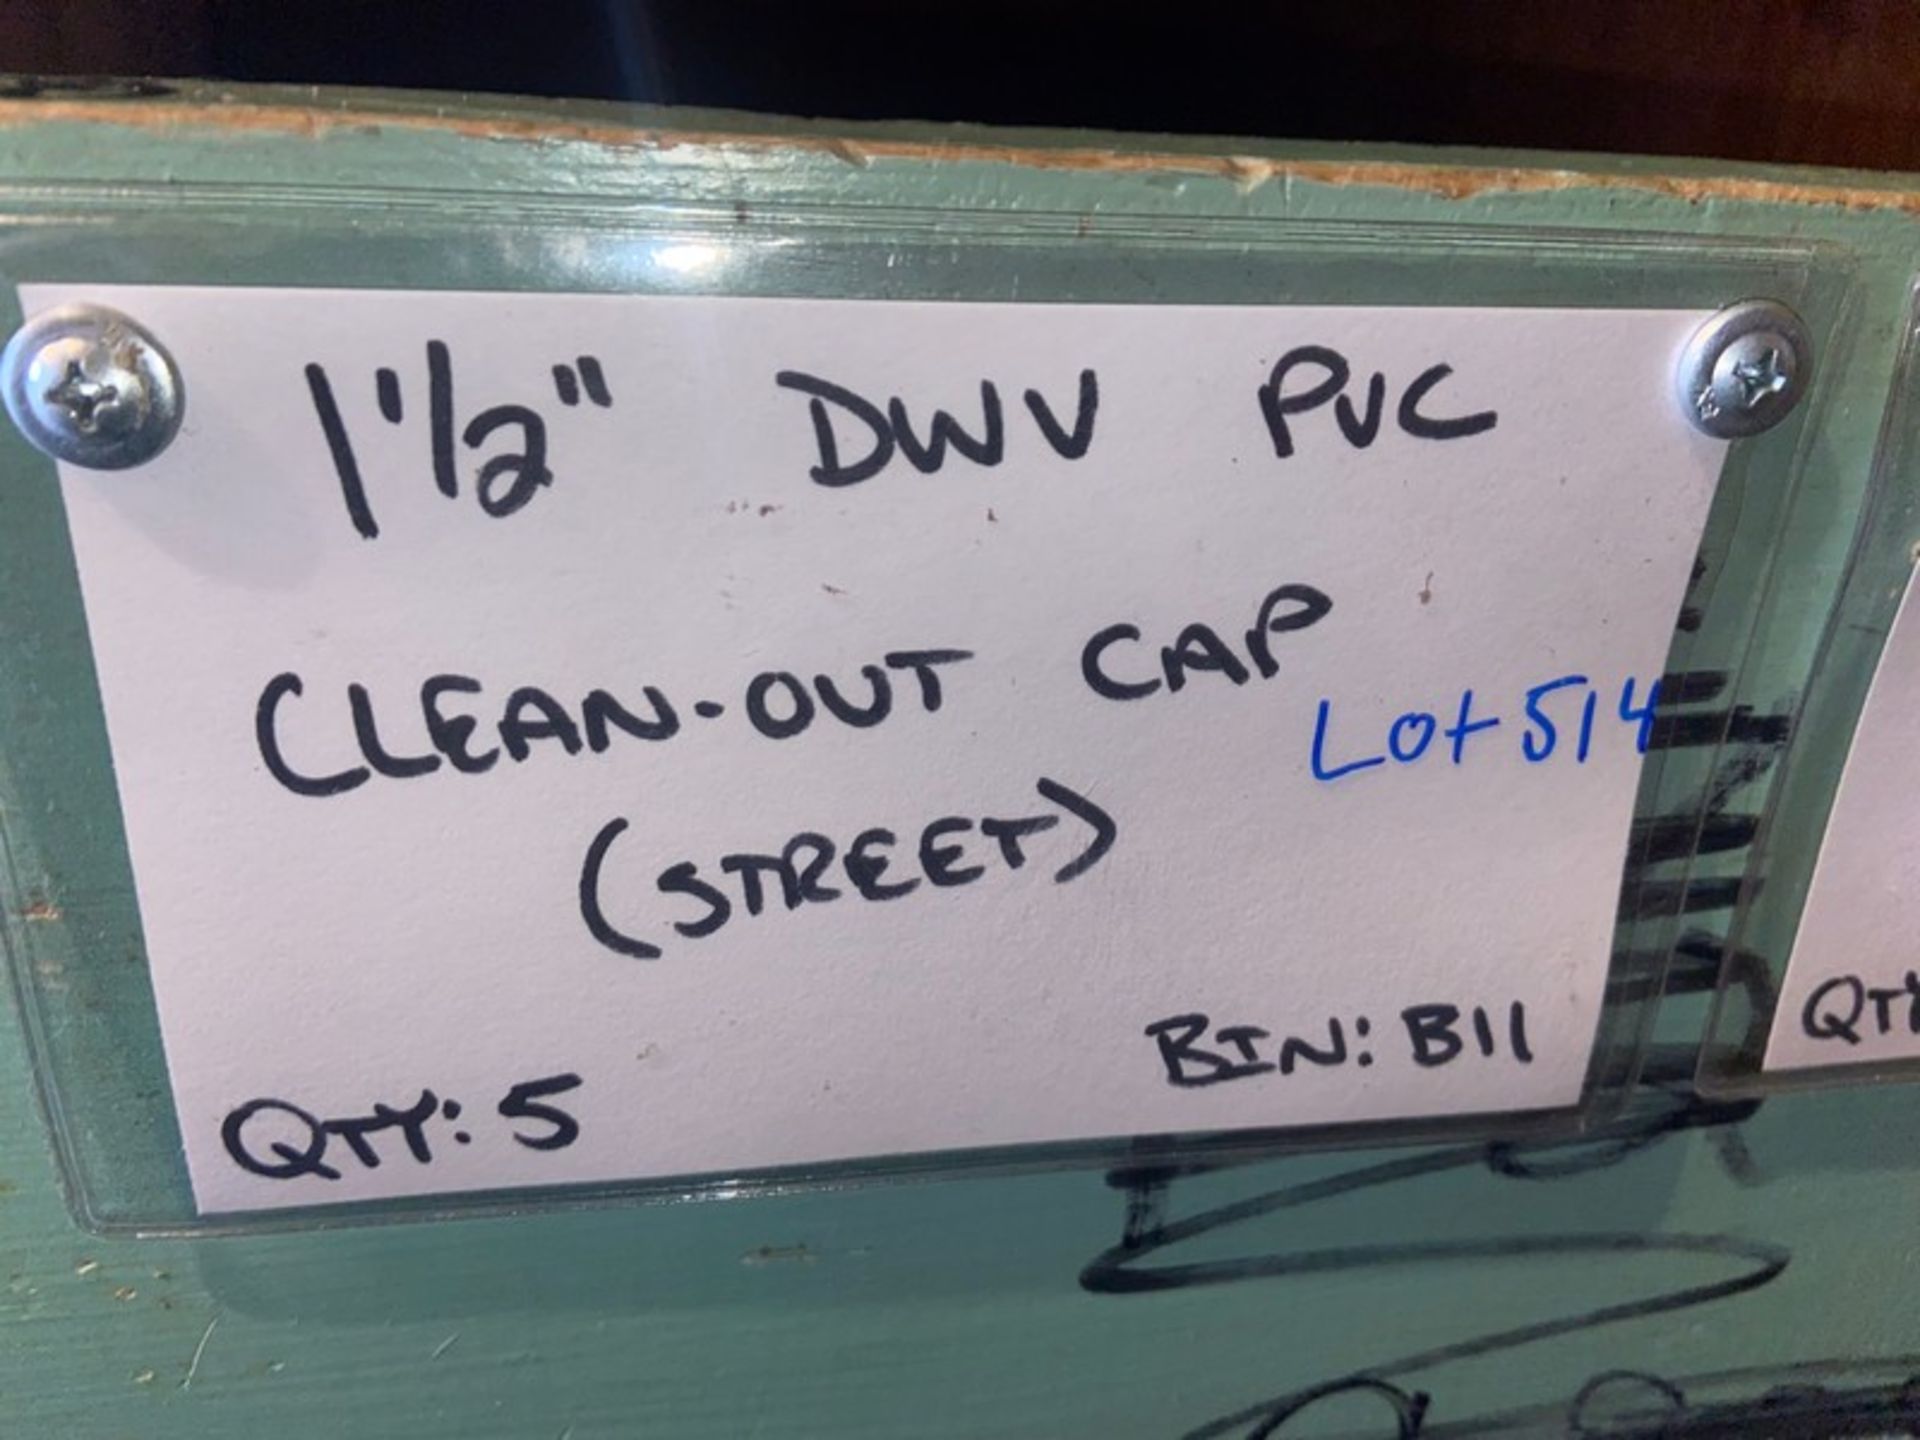 (5) 1 1/2” DWV PVC Clean-out CAP (STREET) (Bin: B11), Includes (23) 1 1/2” DWV PVC Clean-out CAP ( - Bild 3 aus 9